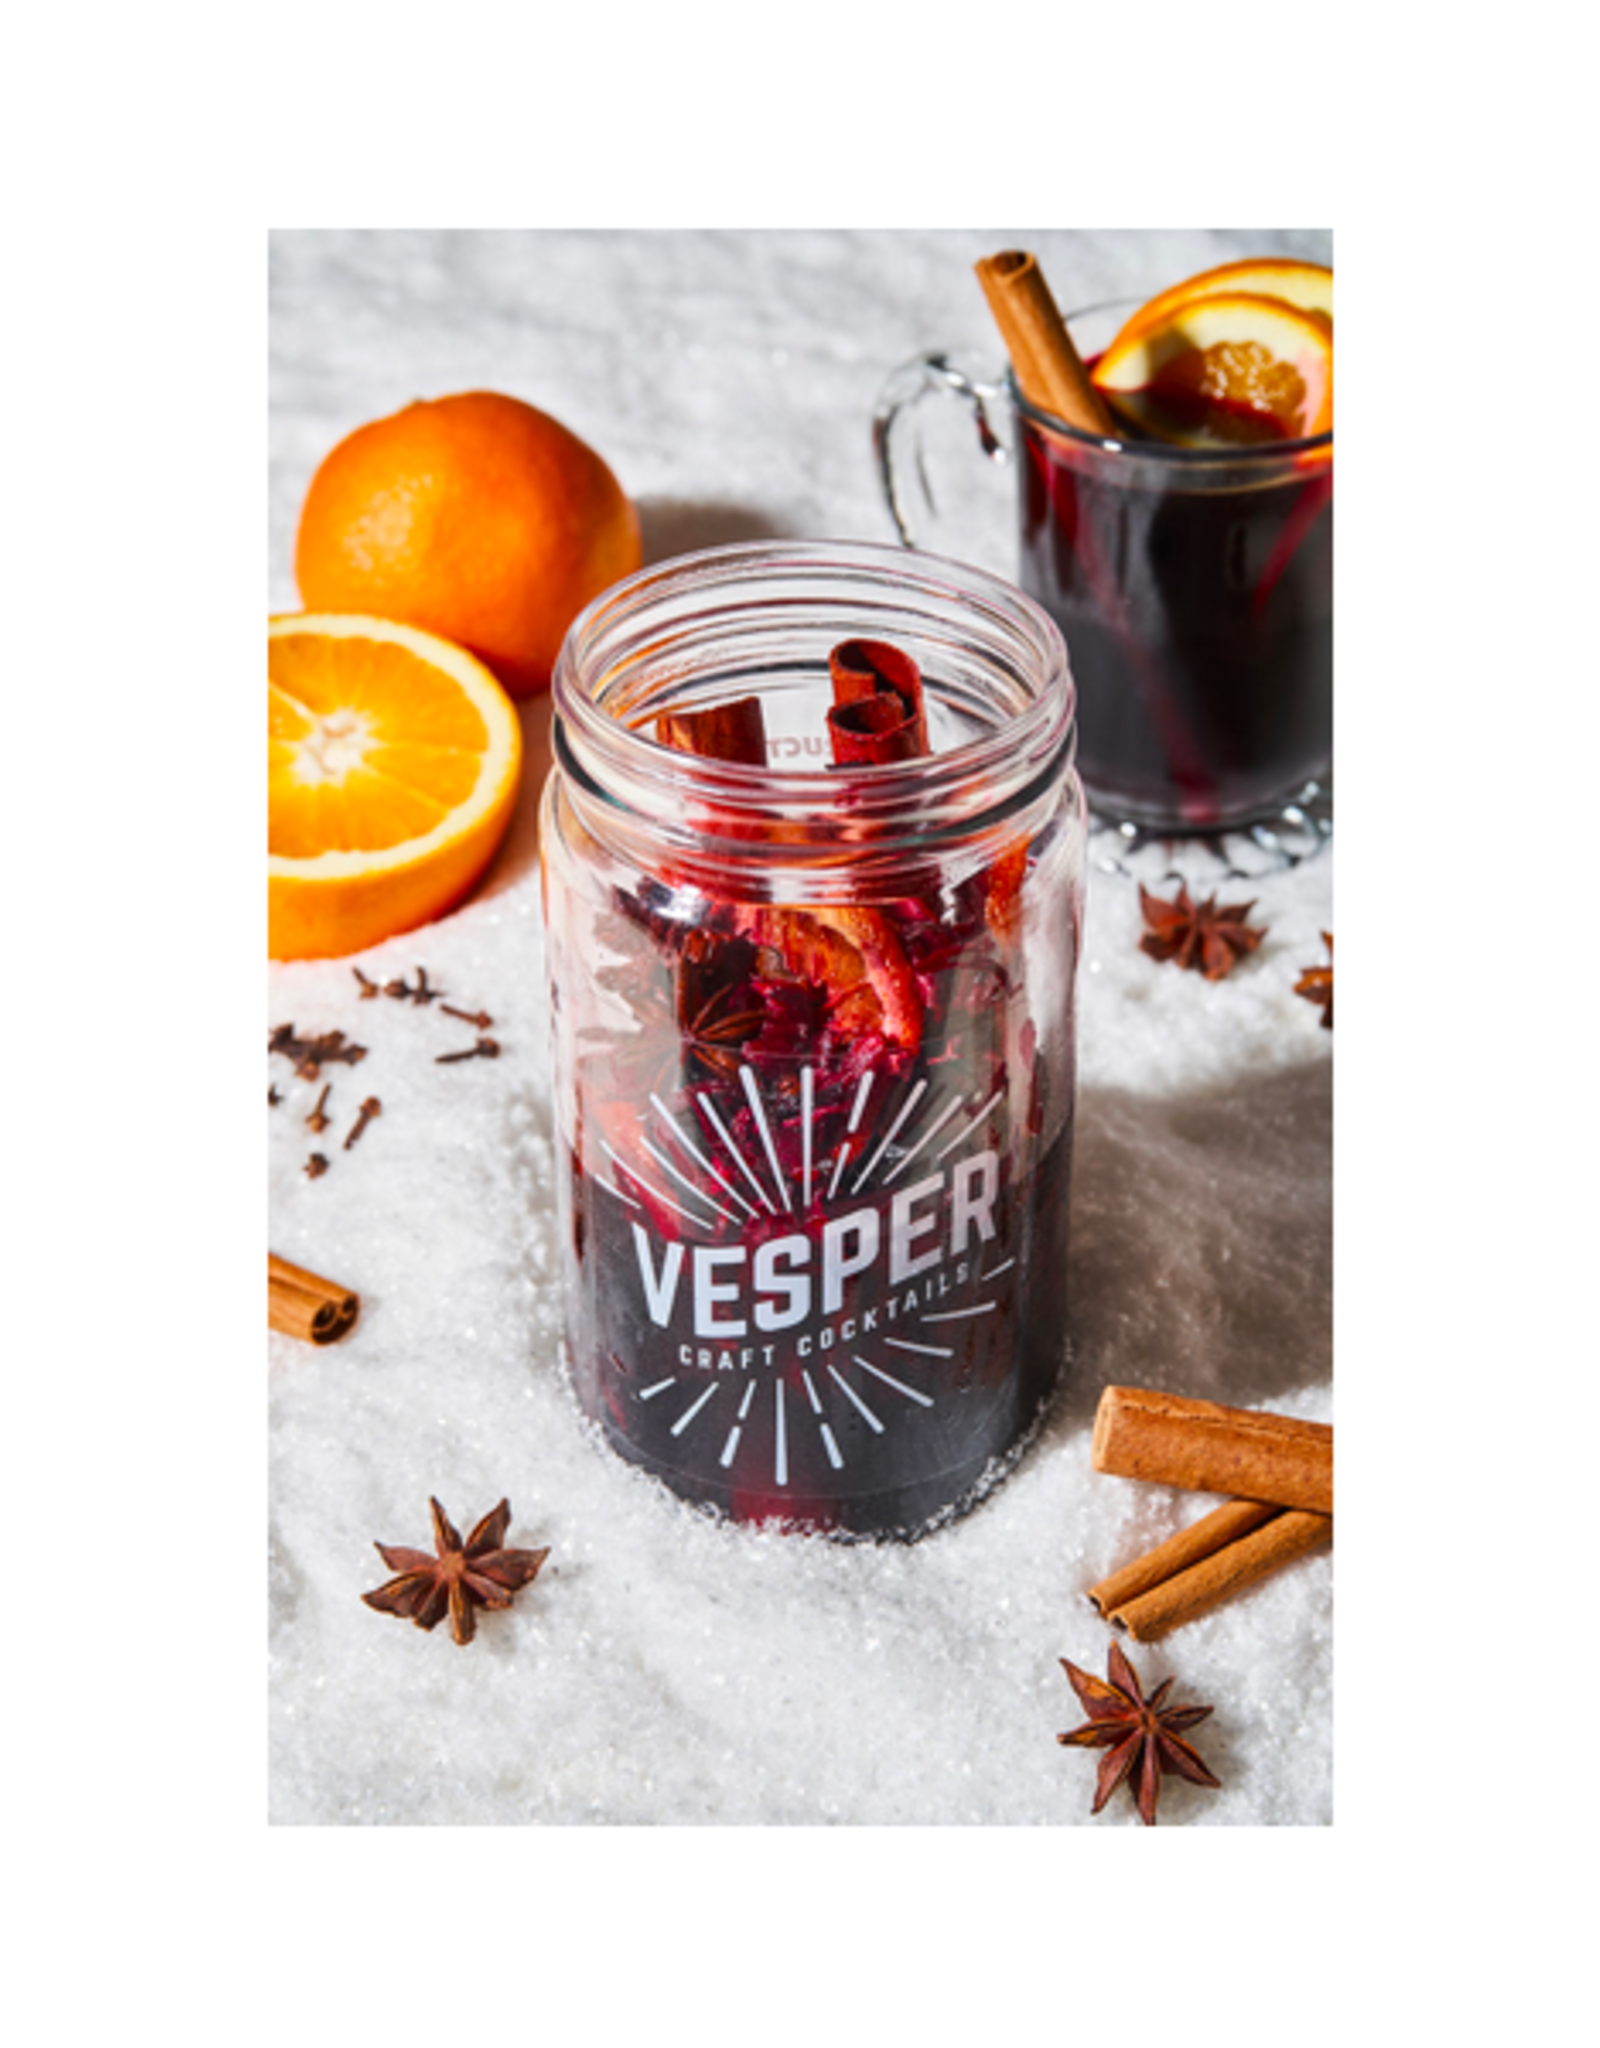 BOU - Vesper Craft Cocktail Kit / Mulled Wine